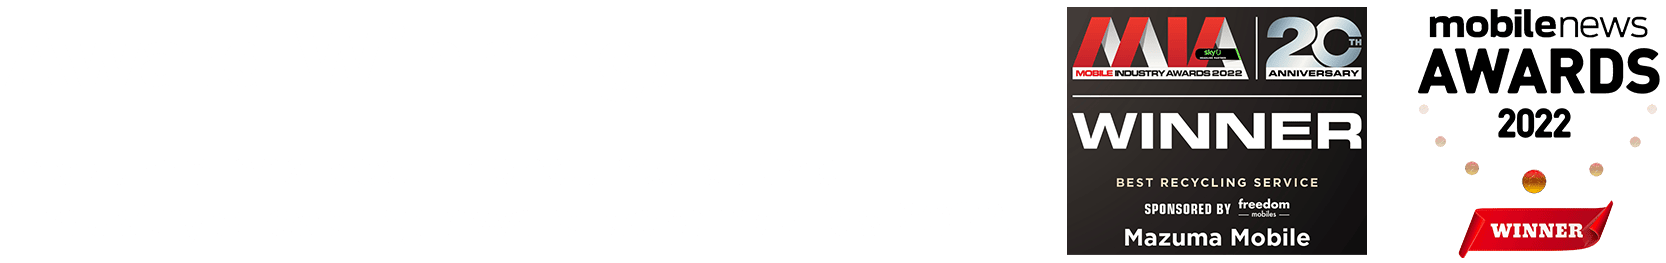 Award winner 2022 logos